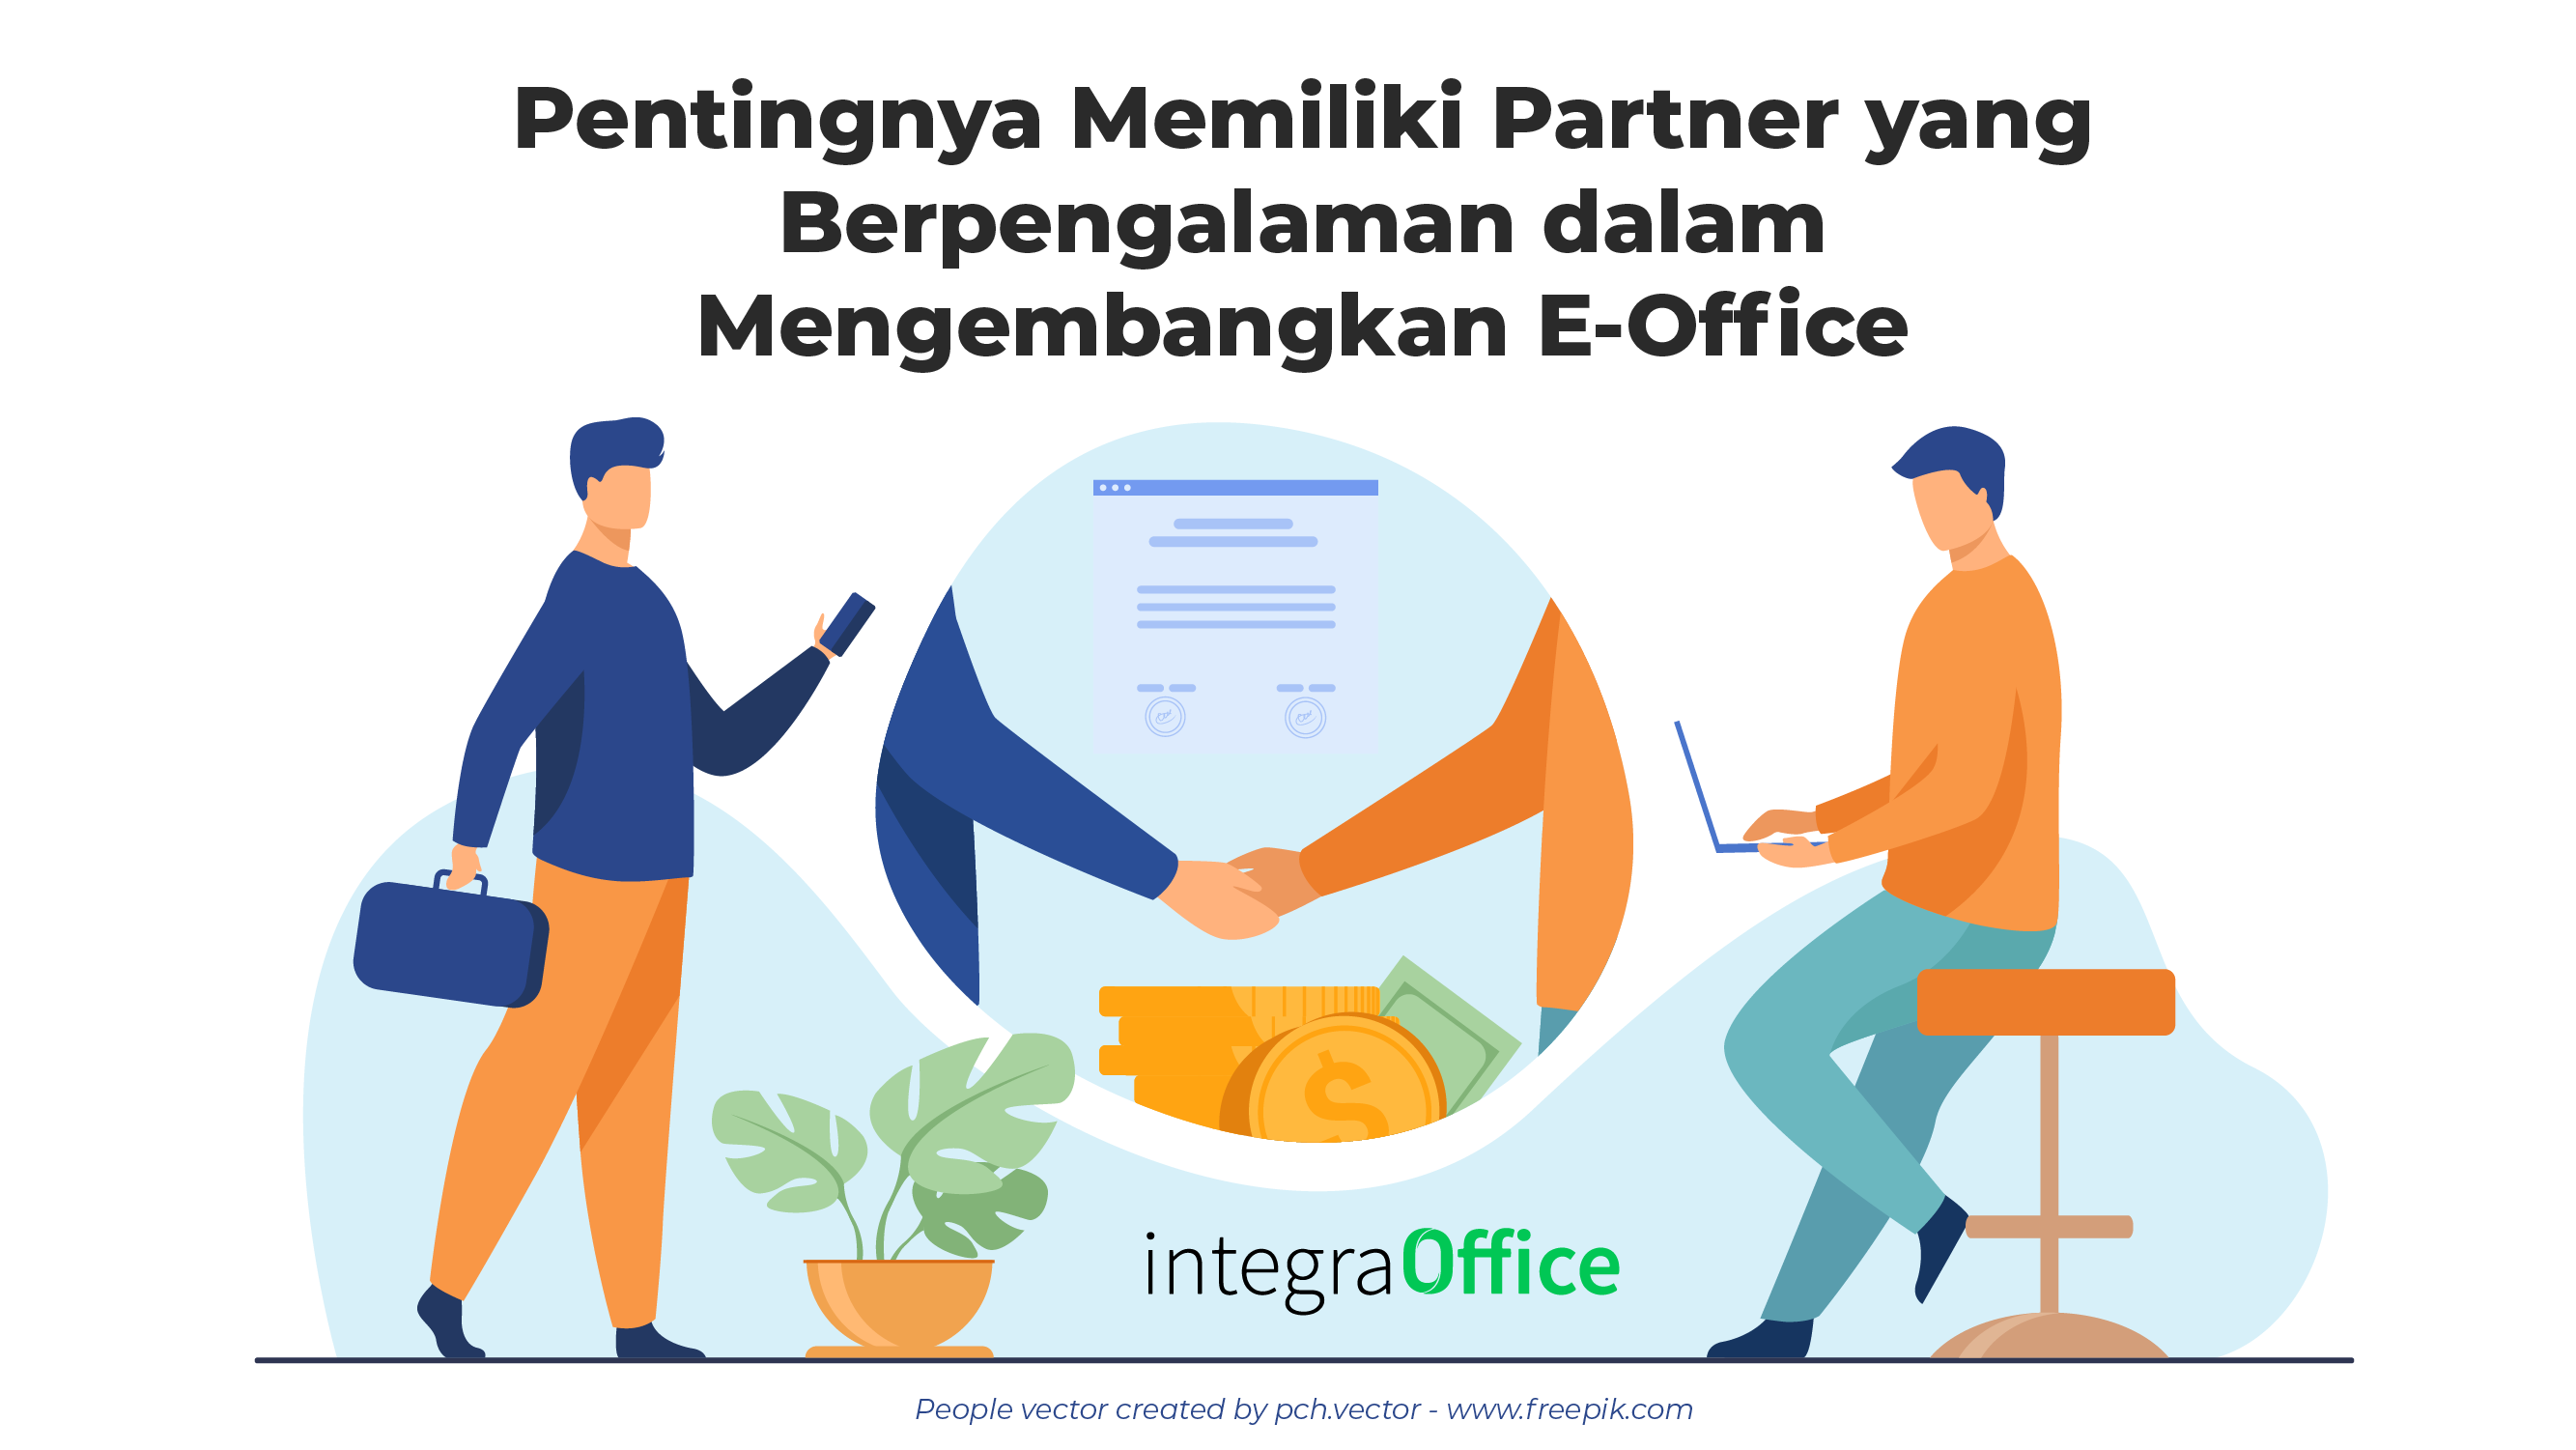 Pentingnya Memiliki Partner yang Berpengalaman dalam Mengembangkan E-Office